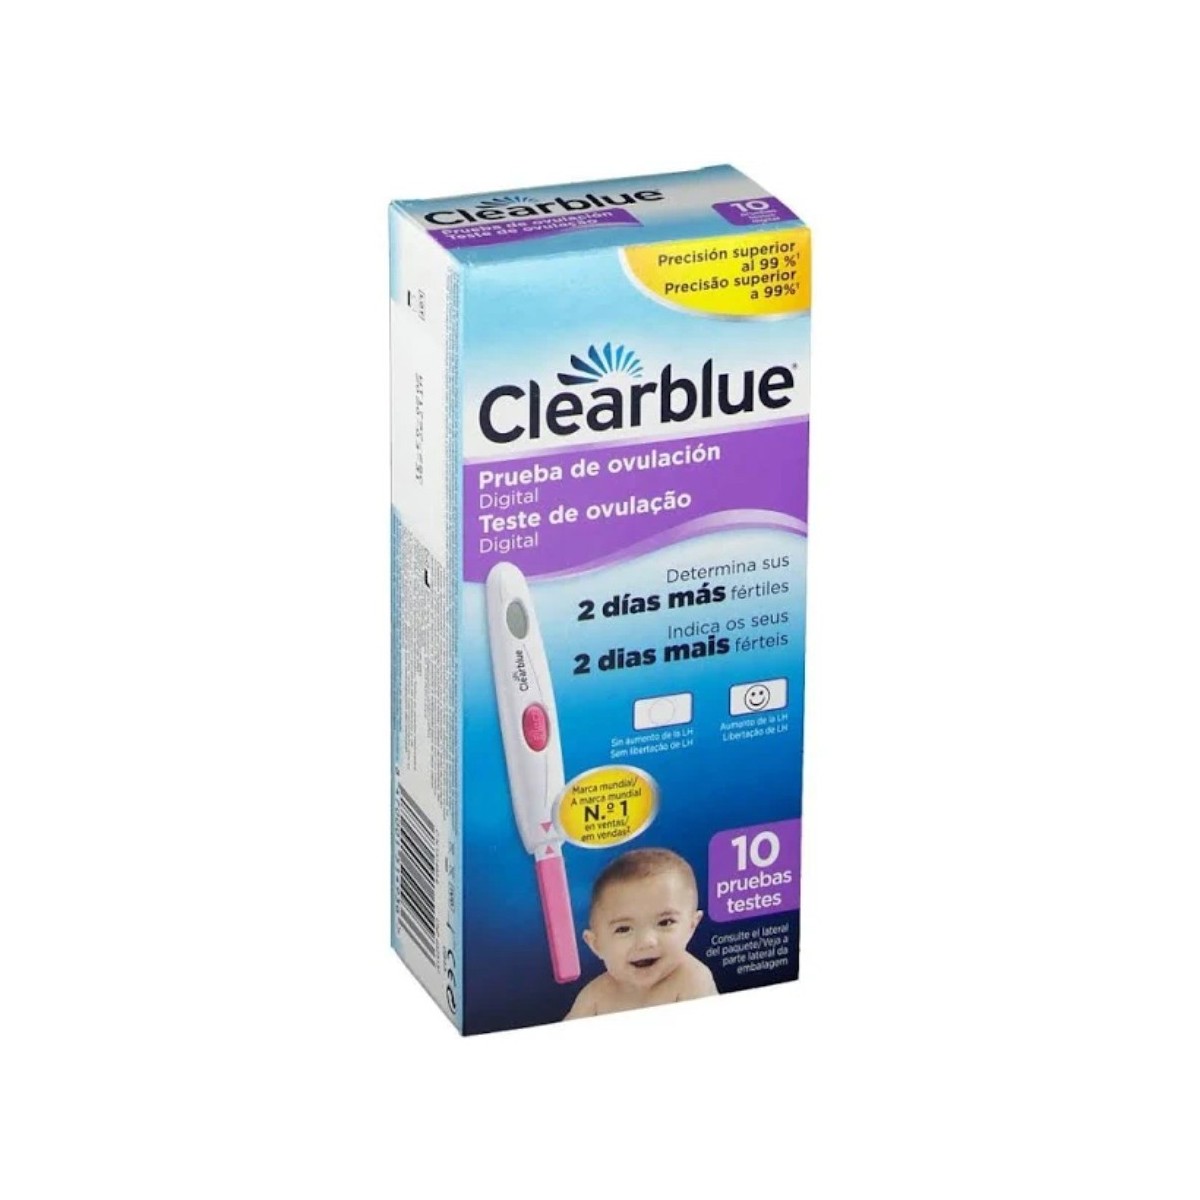 clearblue digital test de ovulacion